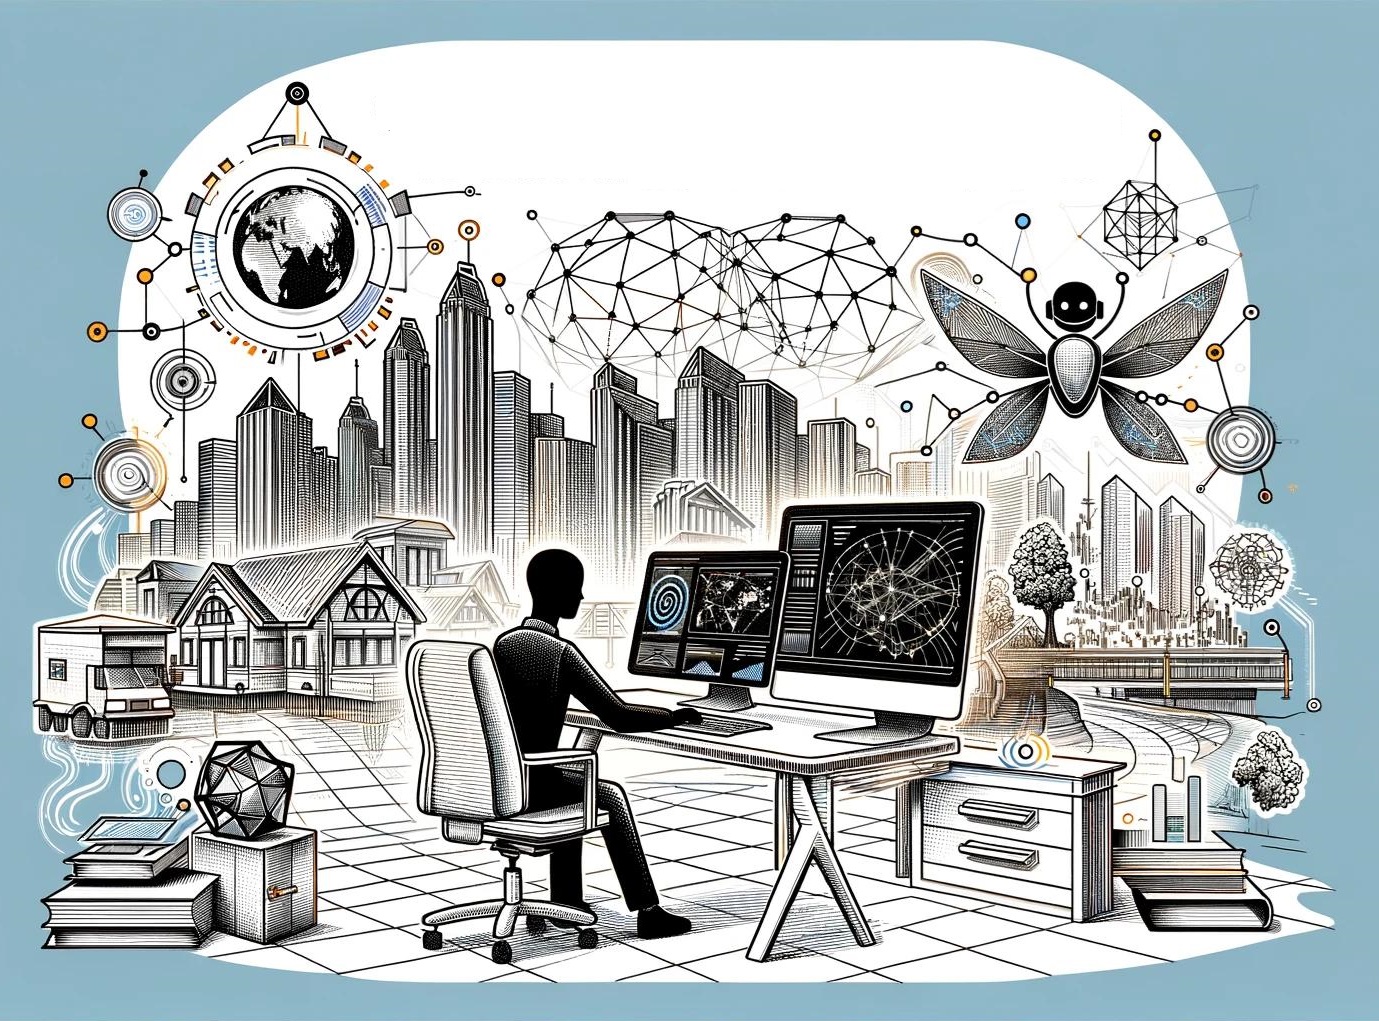 Futuristische stad met moderne wolkenkrabbers en traditionele huizen, centraal persoon achter computerschermen met data en netwerken, omringd door technologische symbolen en robotachtige elementen, illustratie van technologie en stadsplanning.